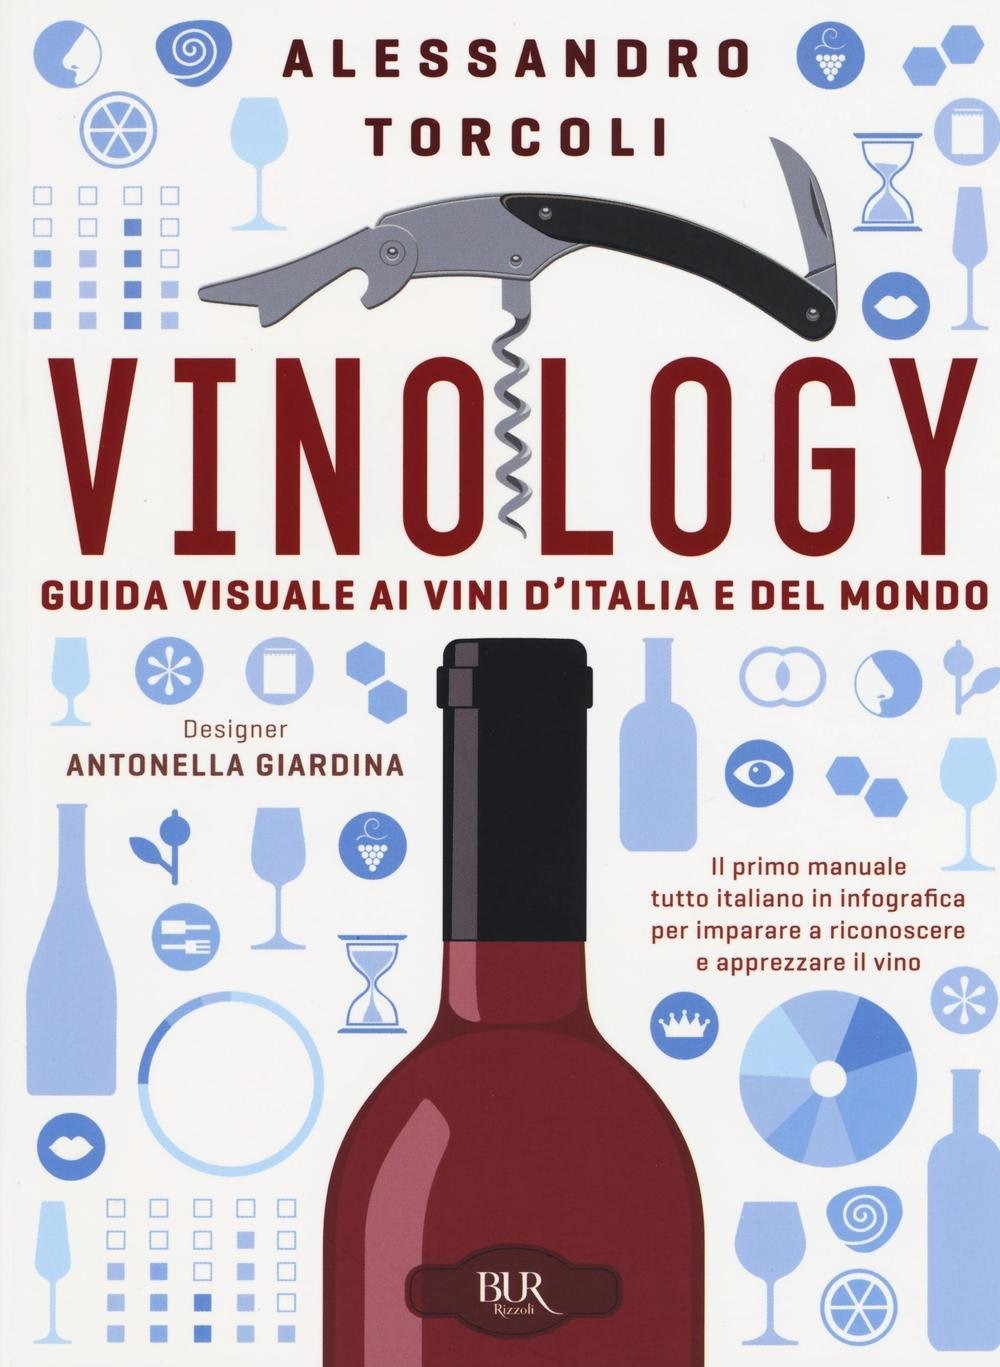 Recensione di Vinology – Alessandro Torcoli